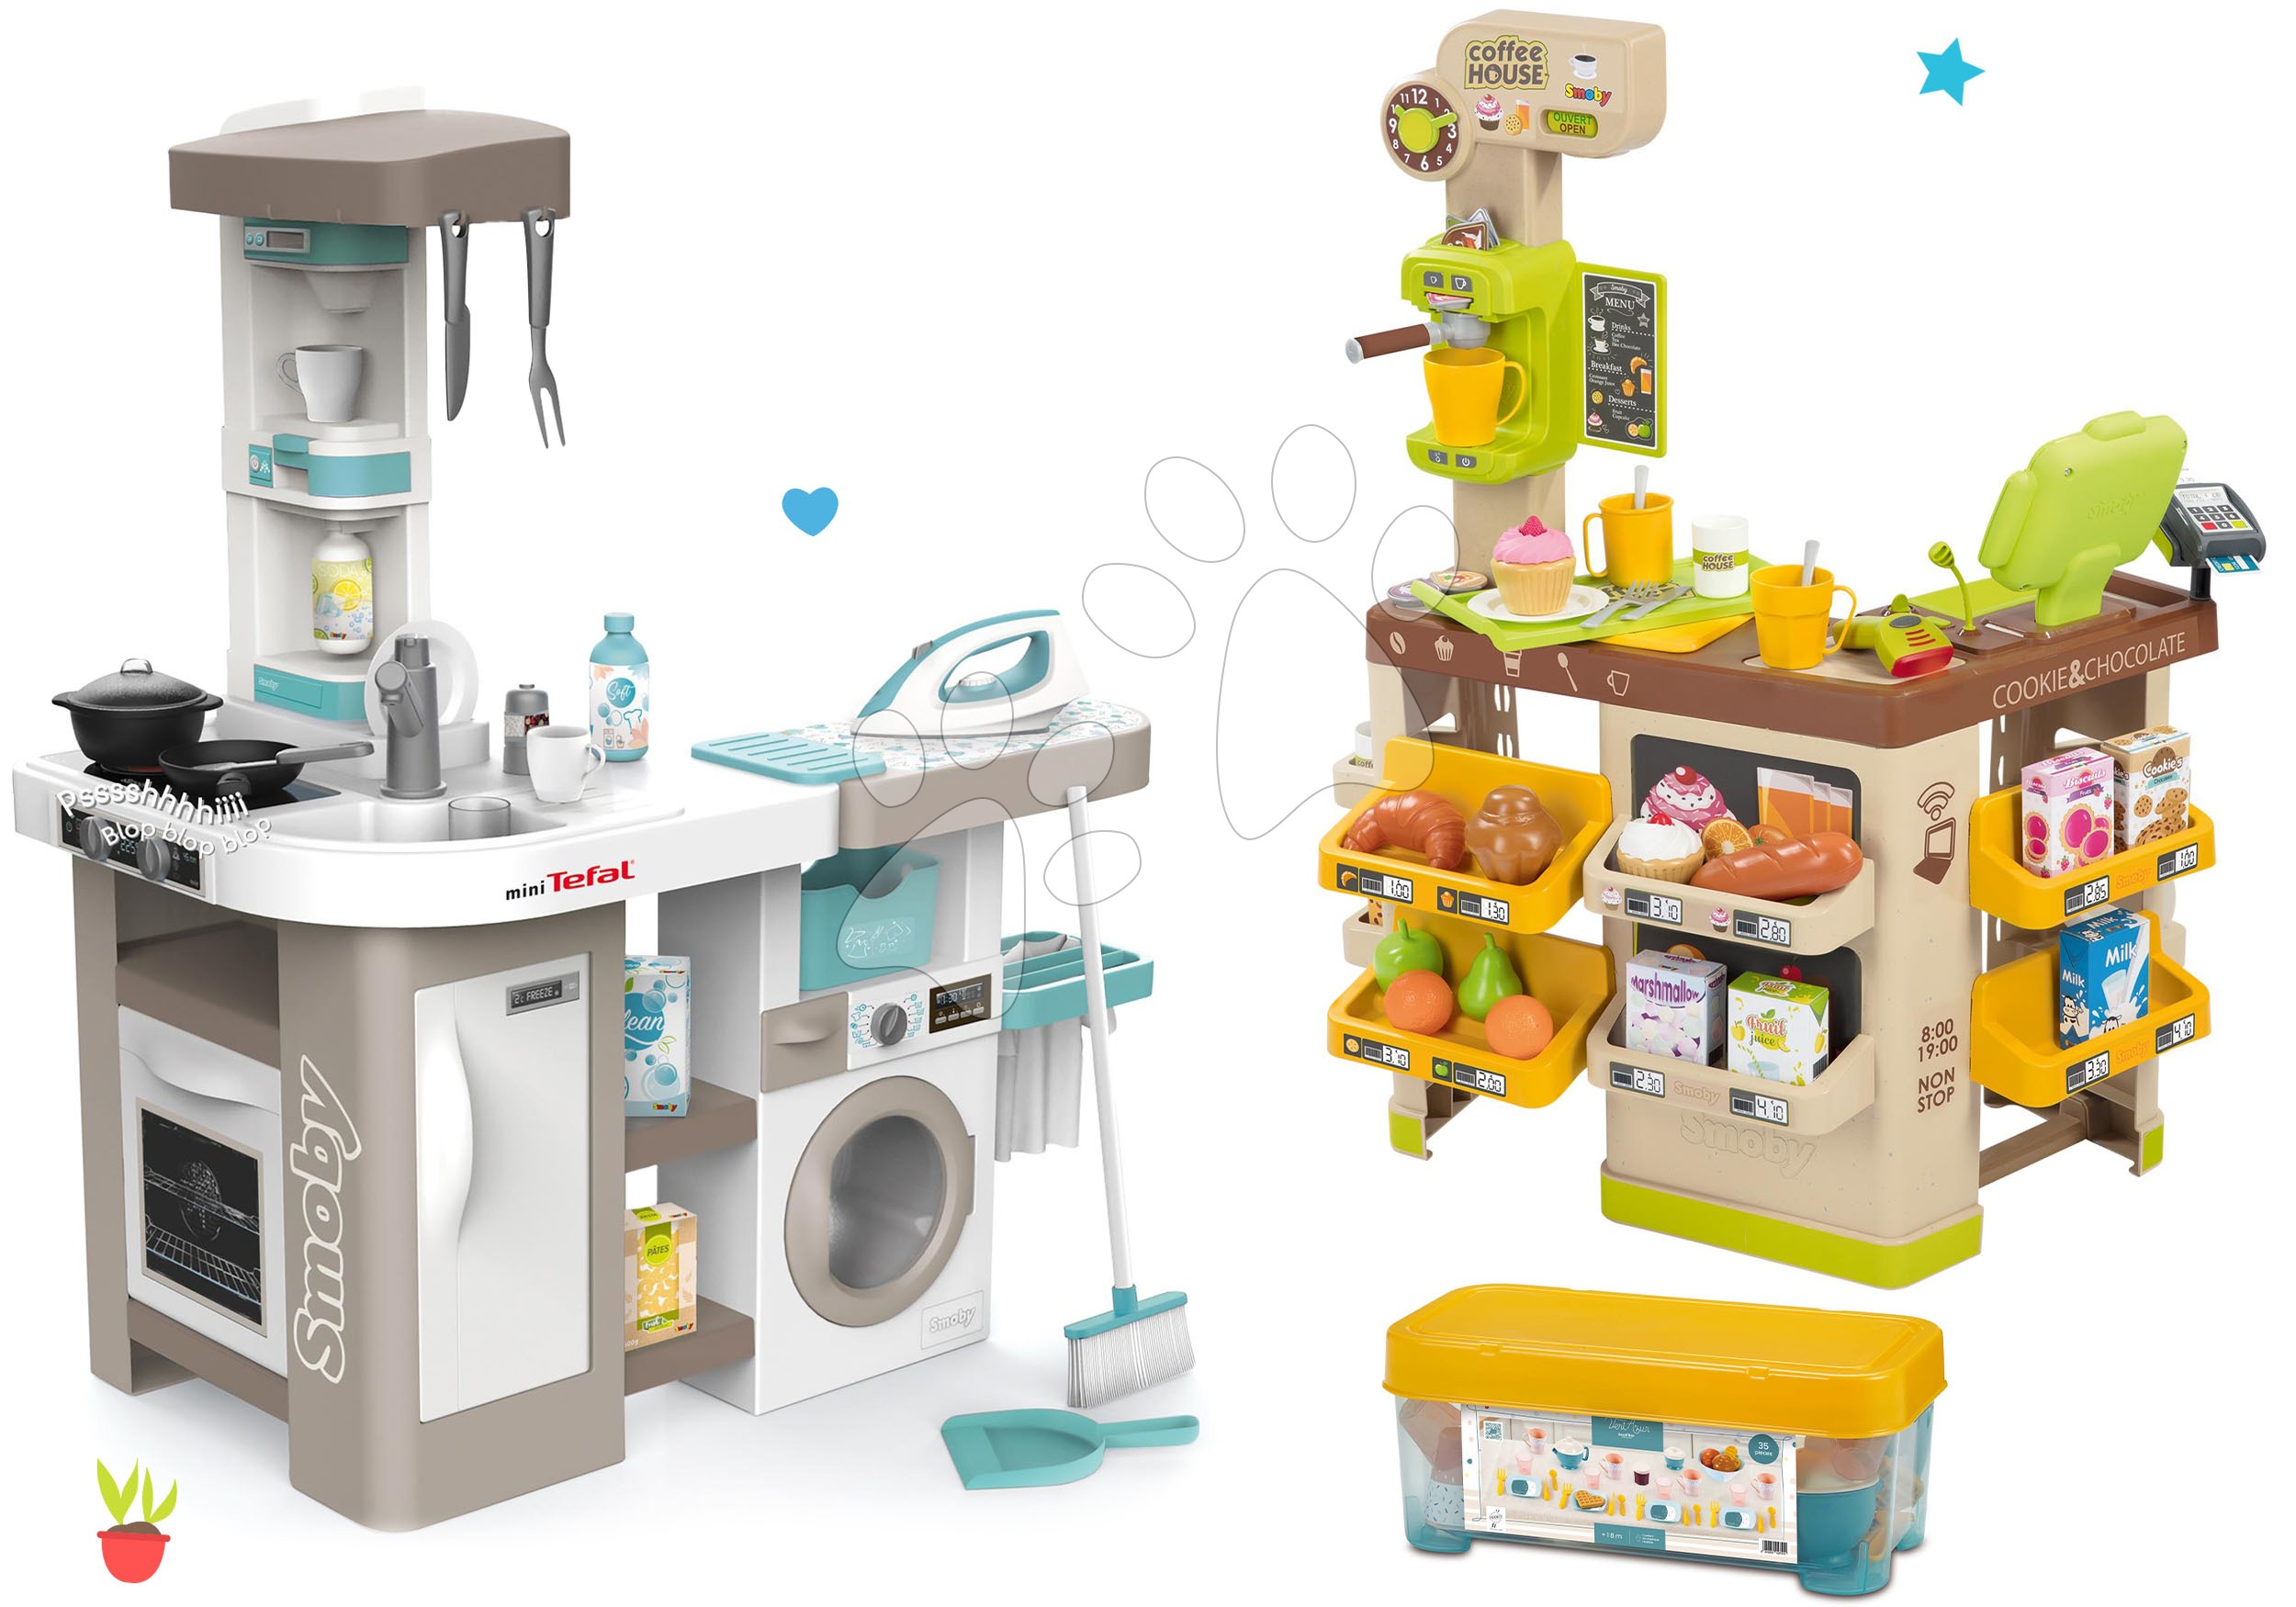 Kuchyňky pro děti sety - Set kuchyňka elektronická s pračkou a žehlicím prknem Tefal Cleaning Kitchen 360° Smoby a kavárna s espresso kávovarem a jídelní souprava